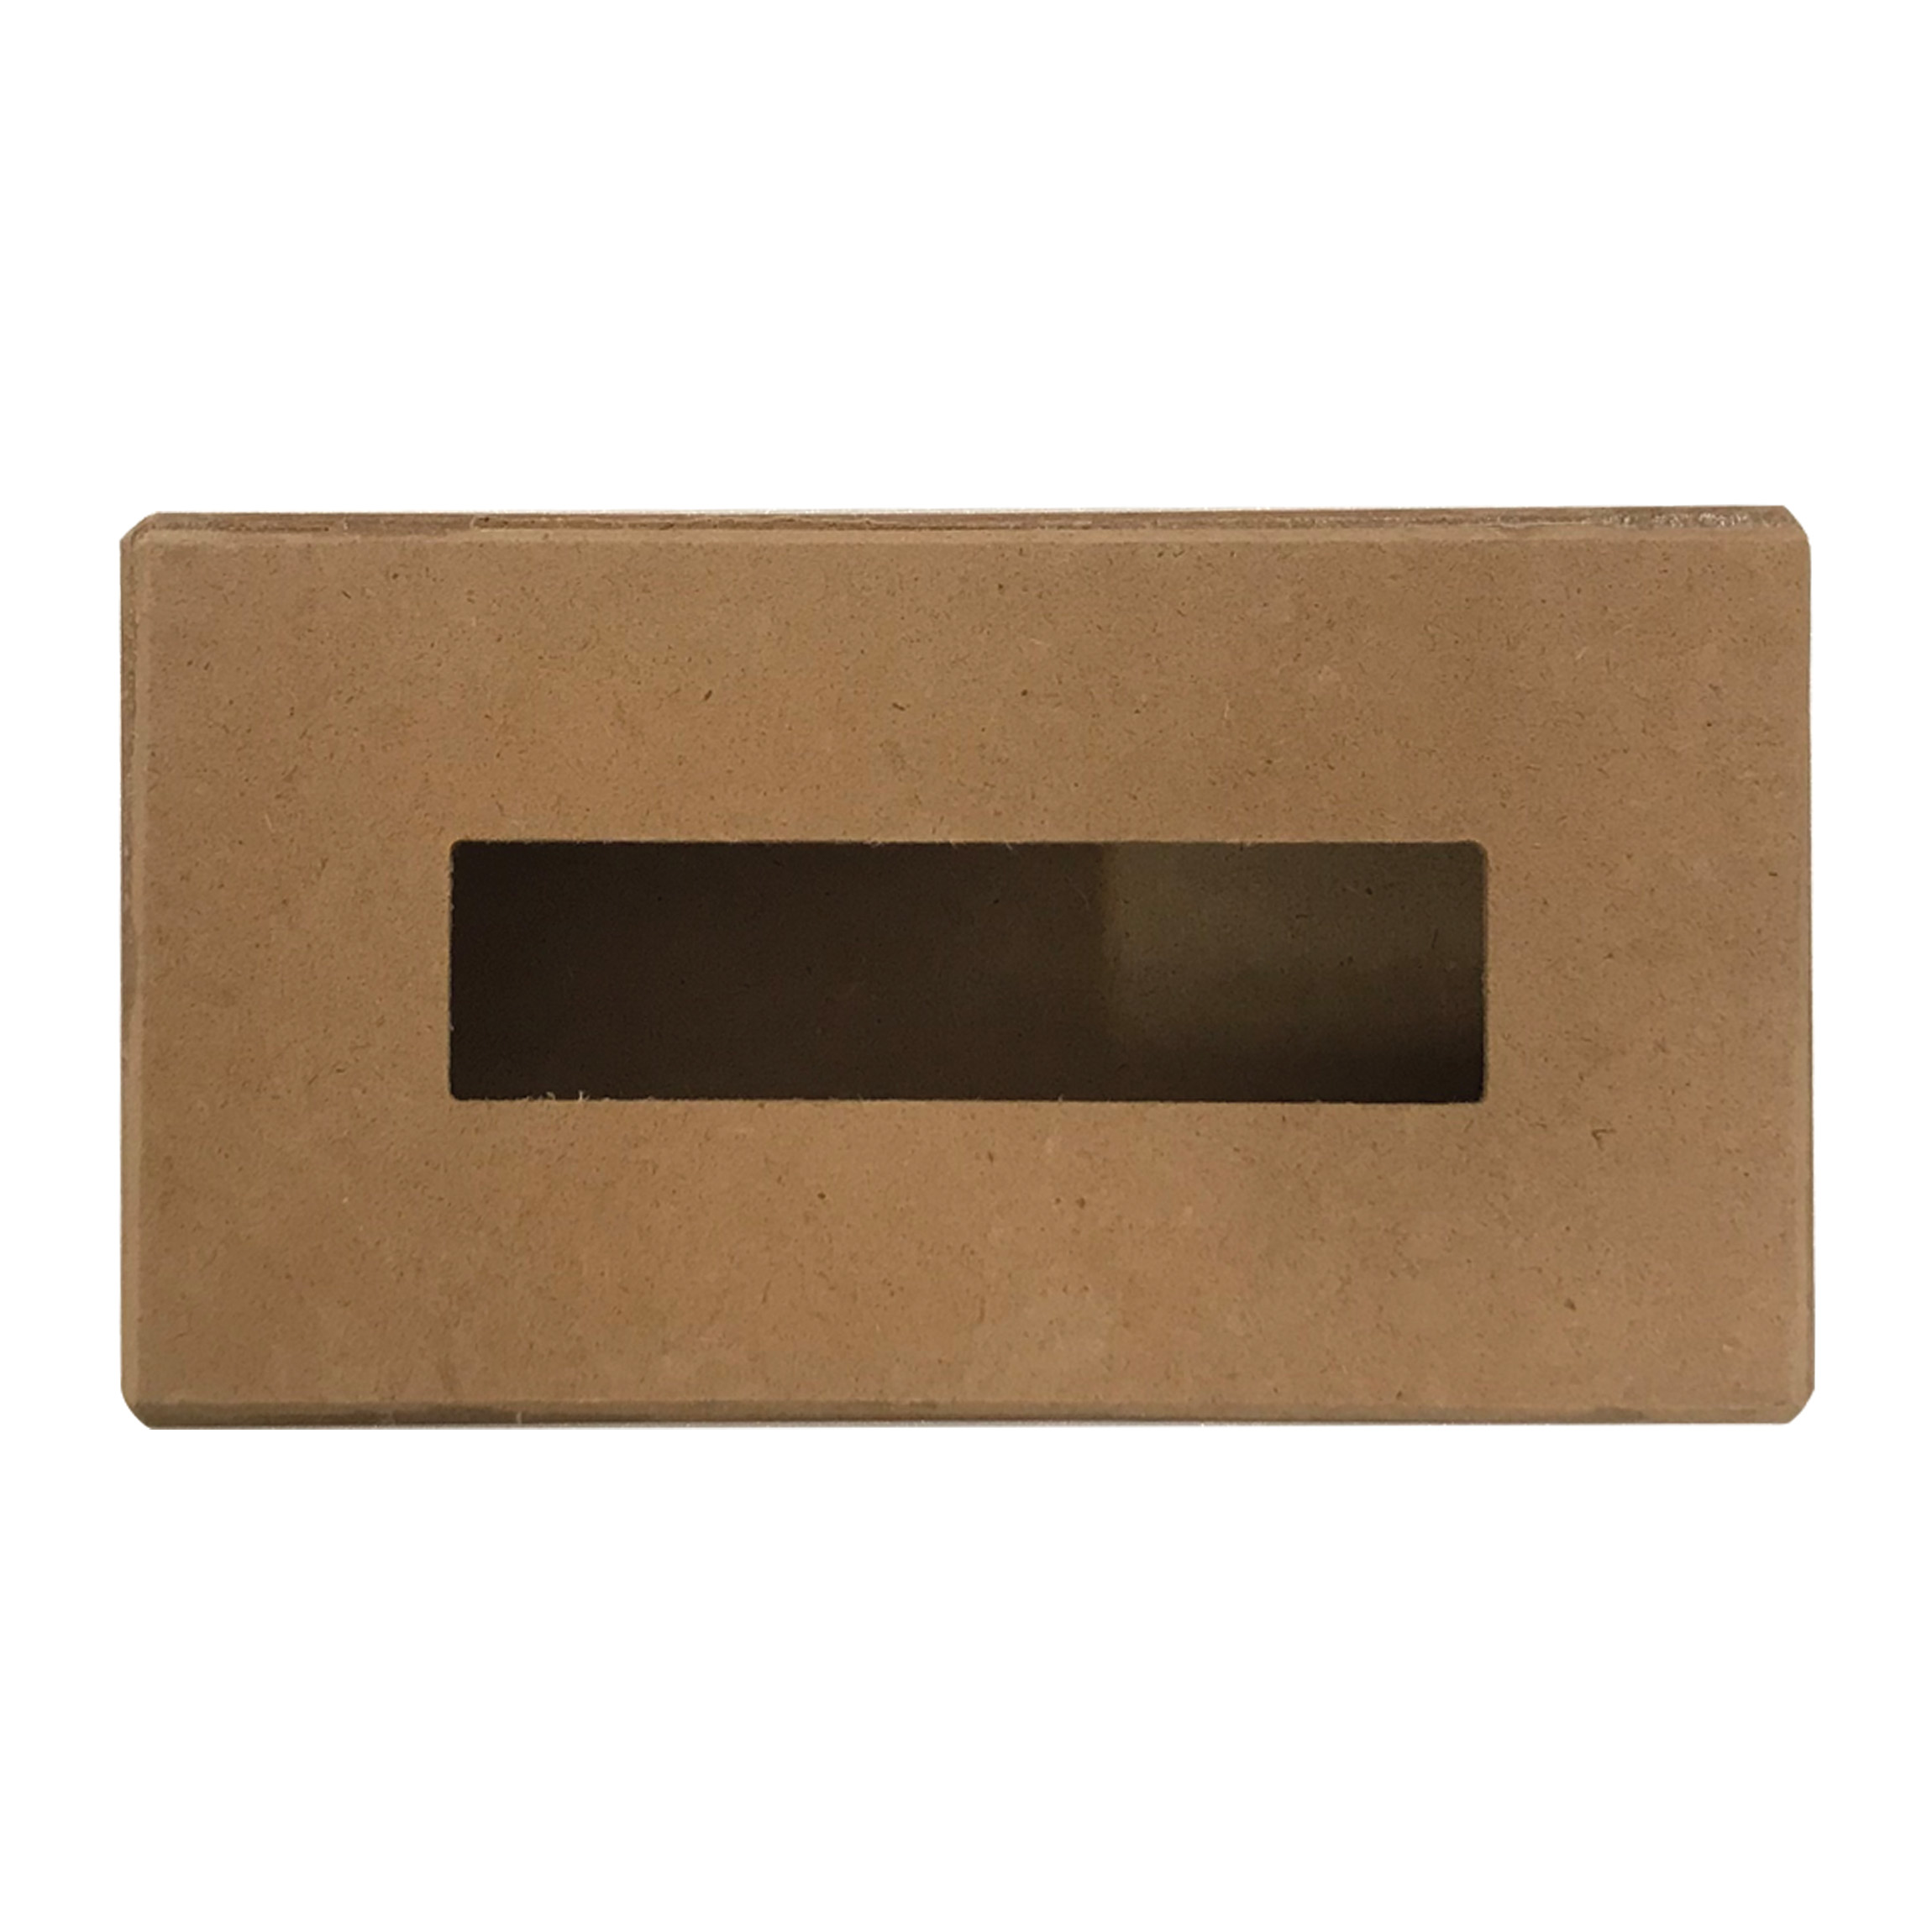 جعبه دستمال کاغذی مدل چوبی متوسط کد 16.3